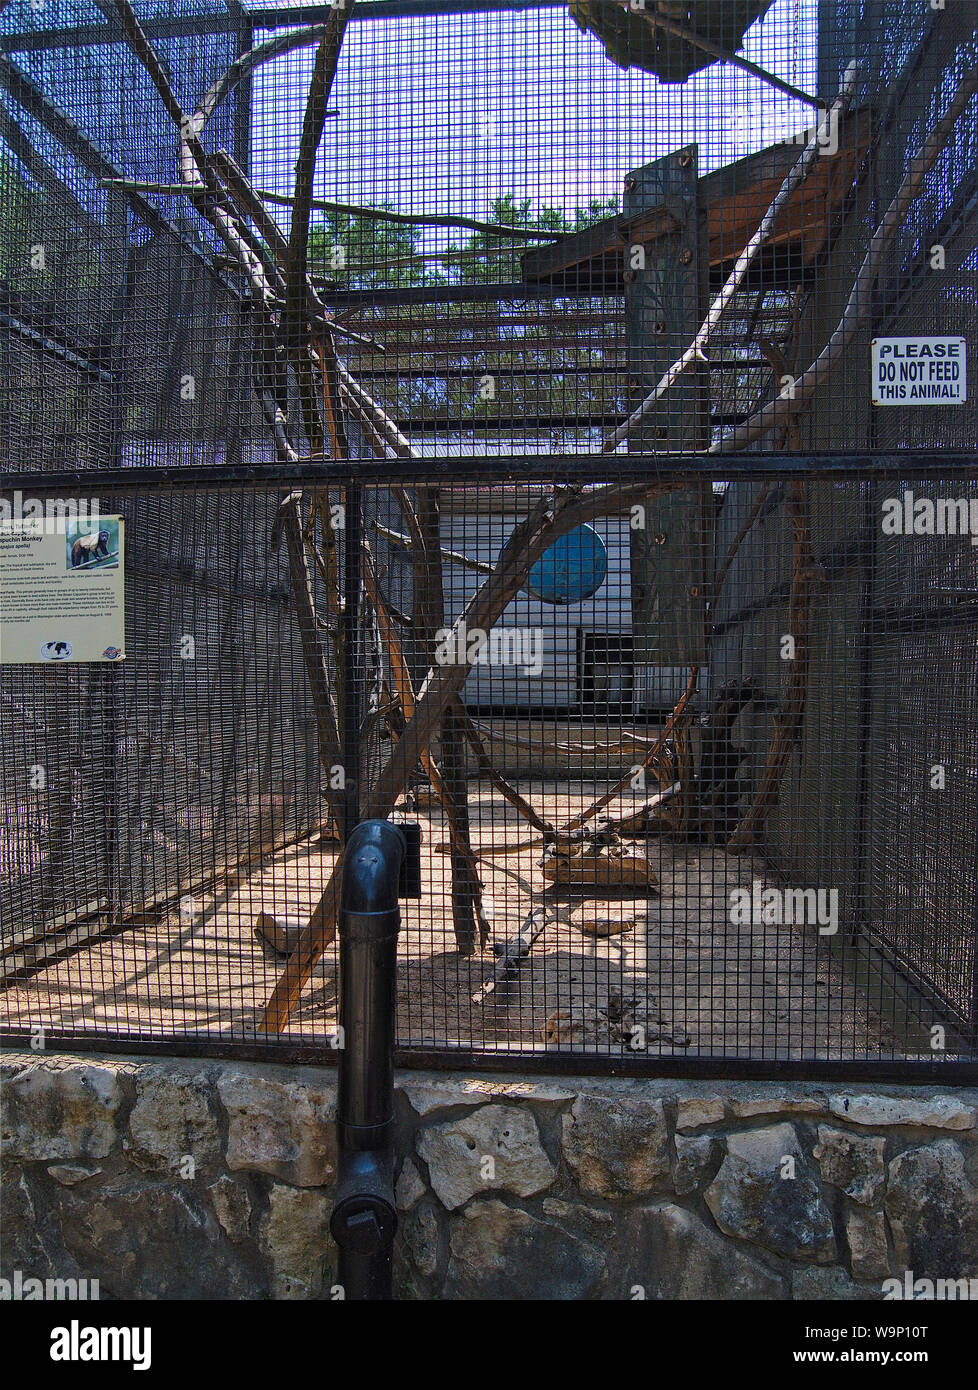 Jaula de monos en el zoo Fotografía de stock - Alamy